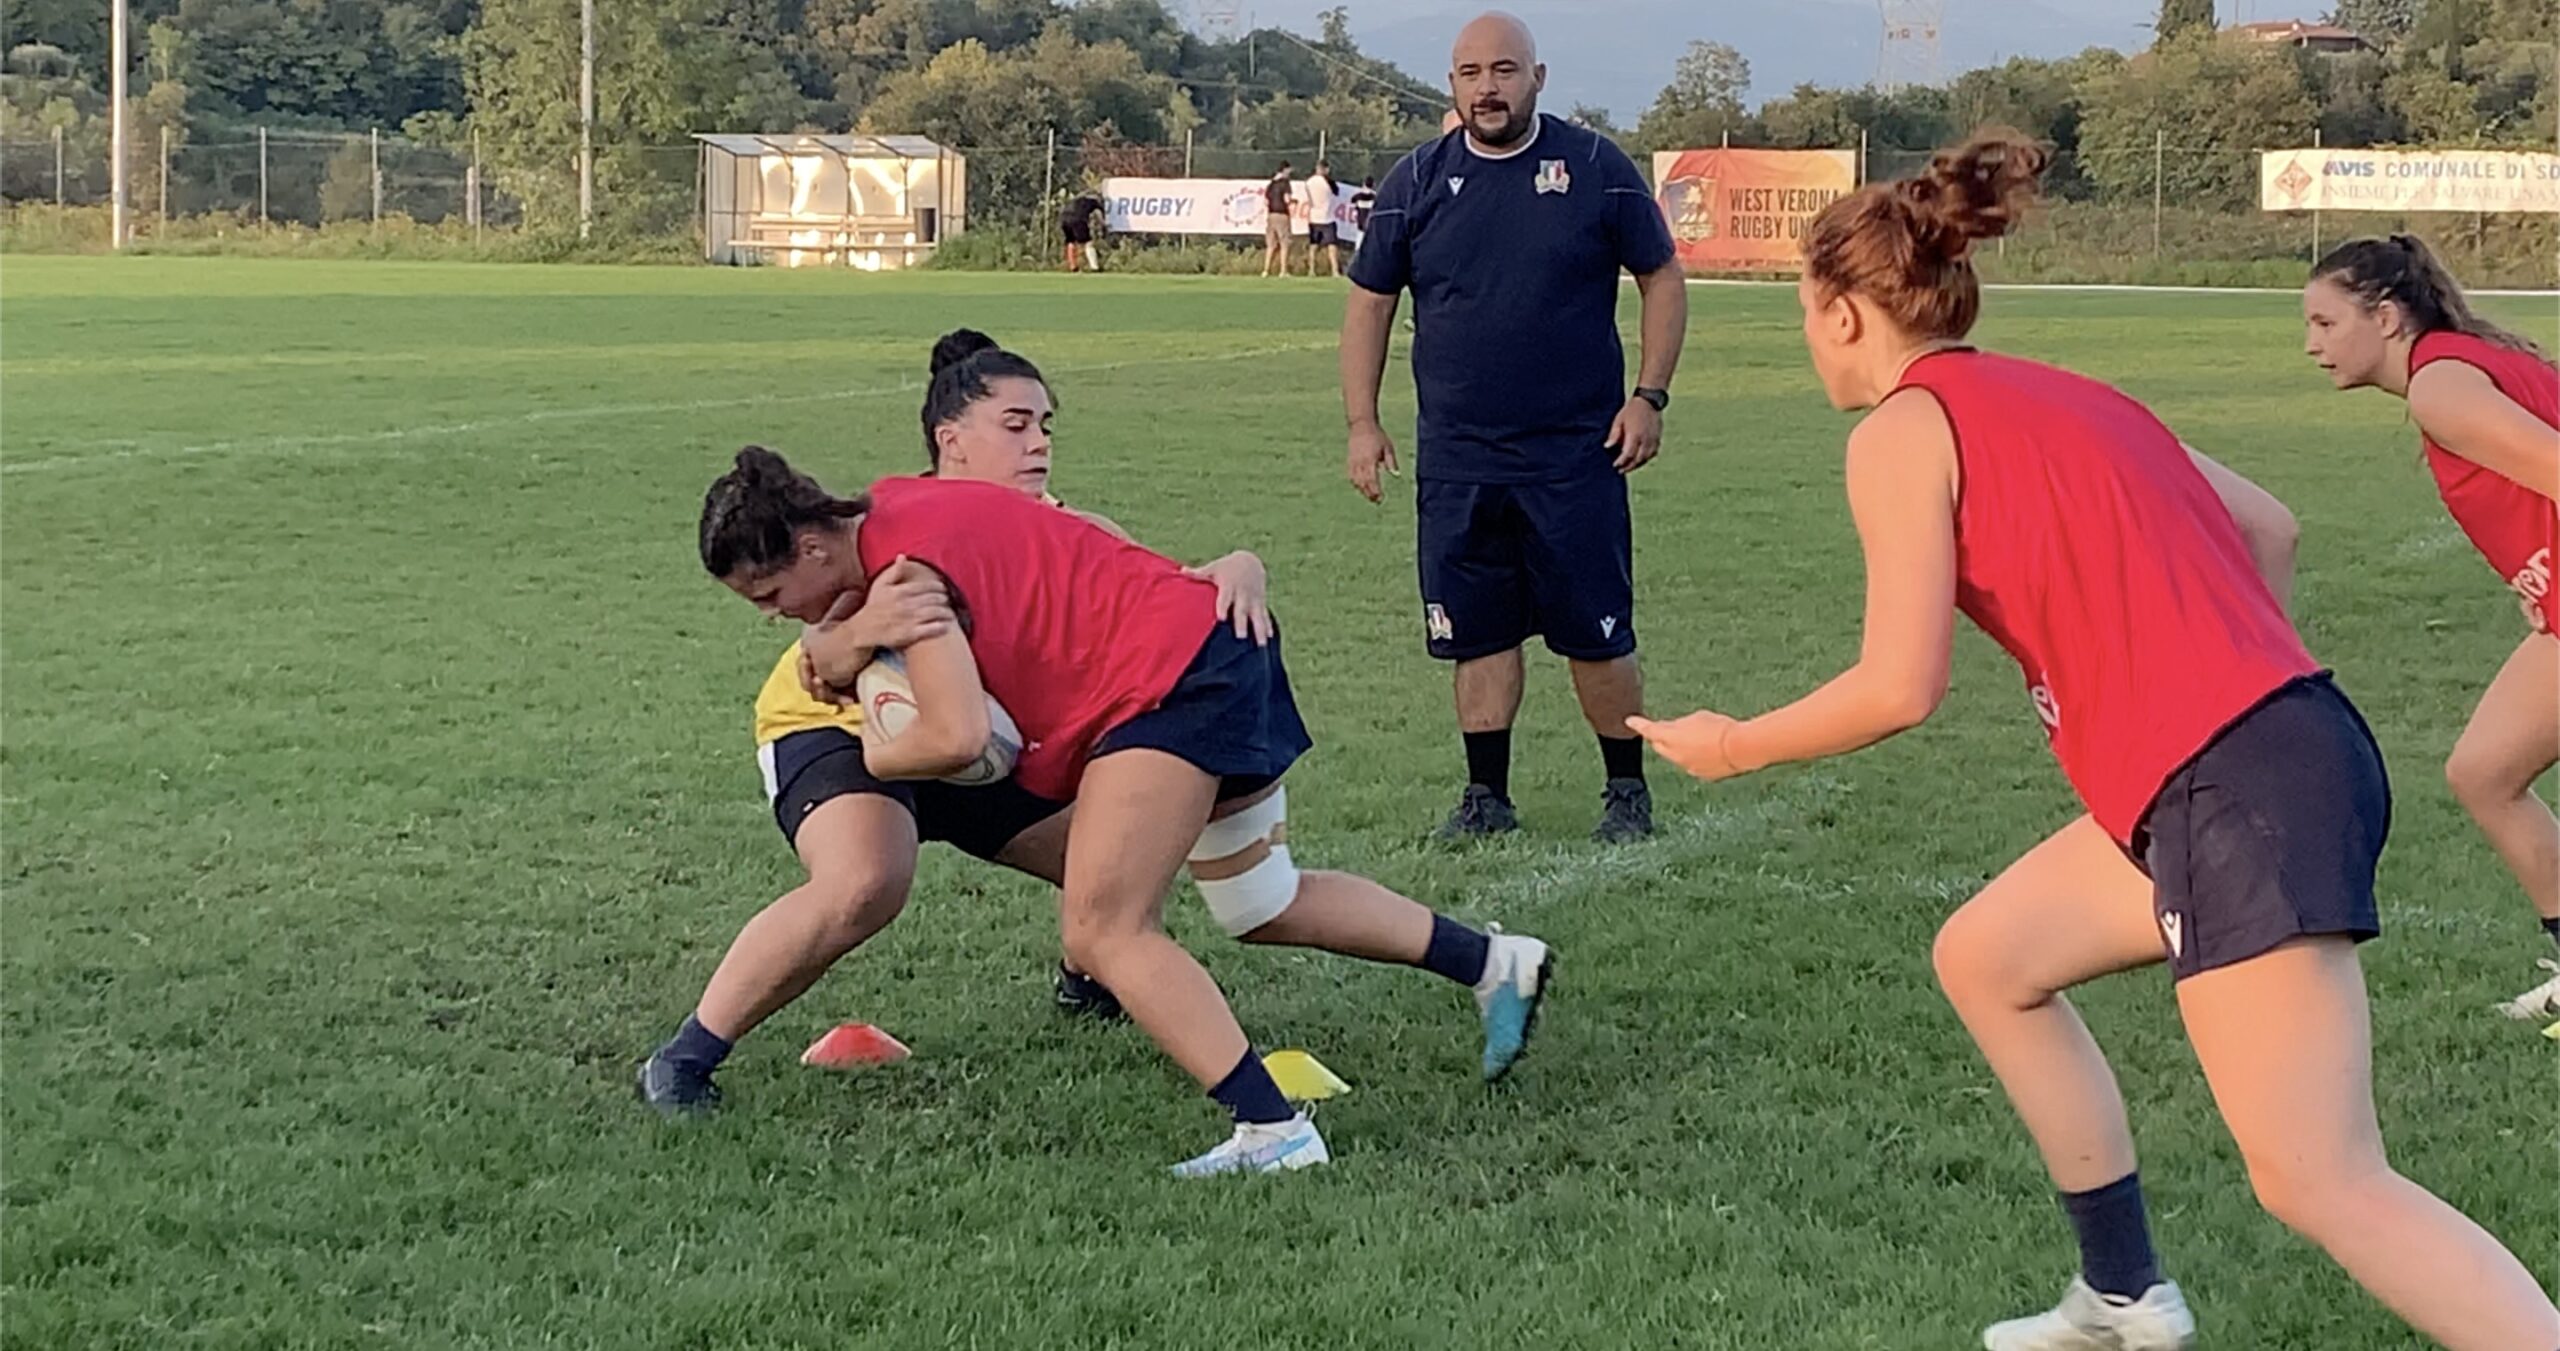 Genders gap Sona Rugby